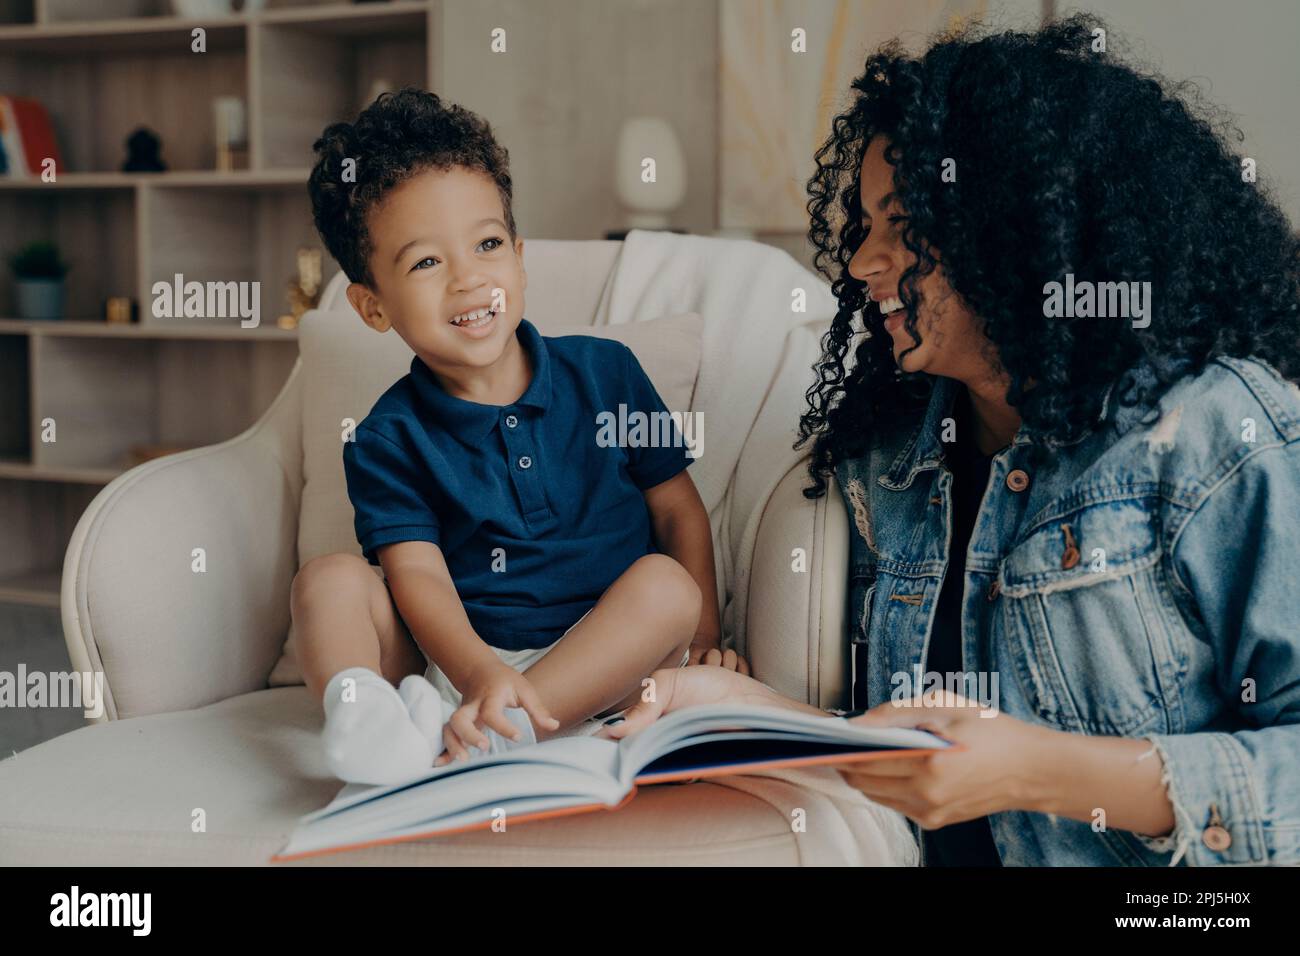 Leidenschaftliche, positive afro-amerikanische Mutter, die ihrem süßen, aufgeregten kleinen Sohn lustige Geschichten vorliest, zusammen lacht und Zeit damit verbringt, über A zu lernen Stockfoto